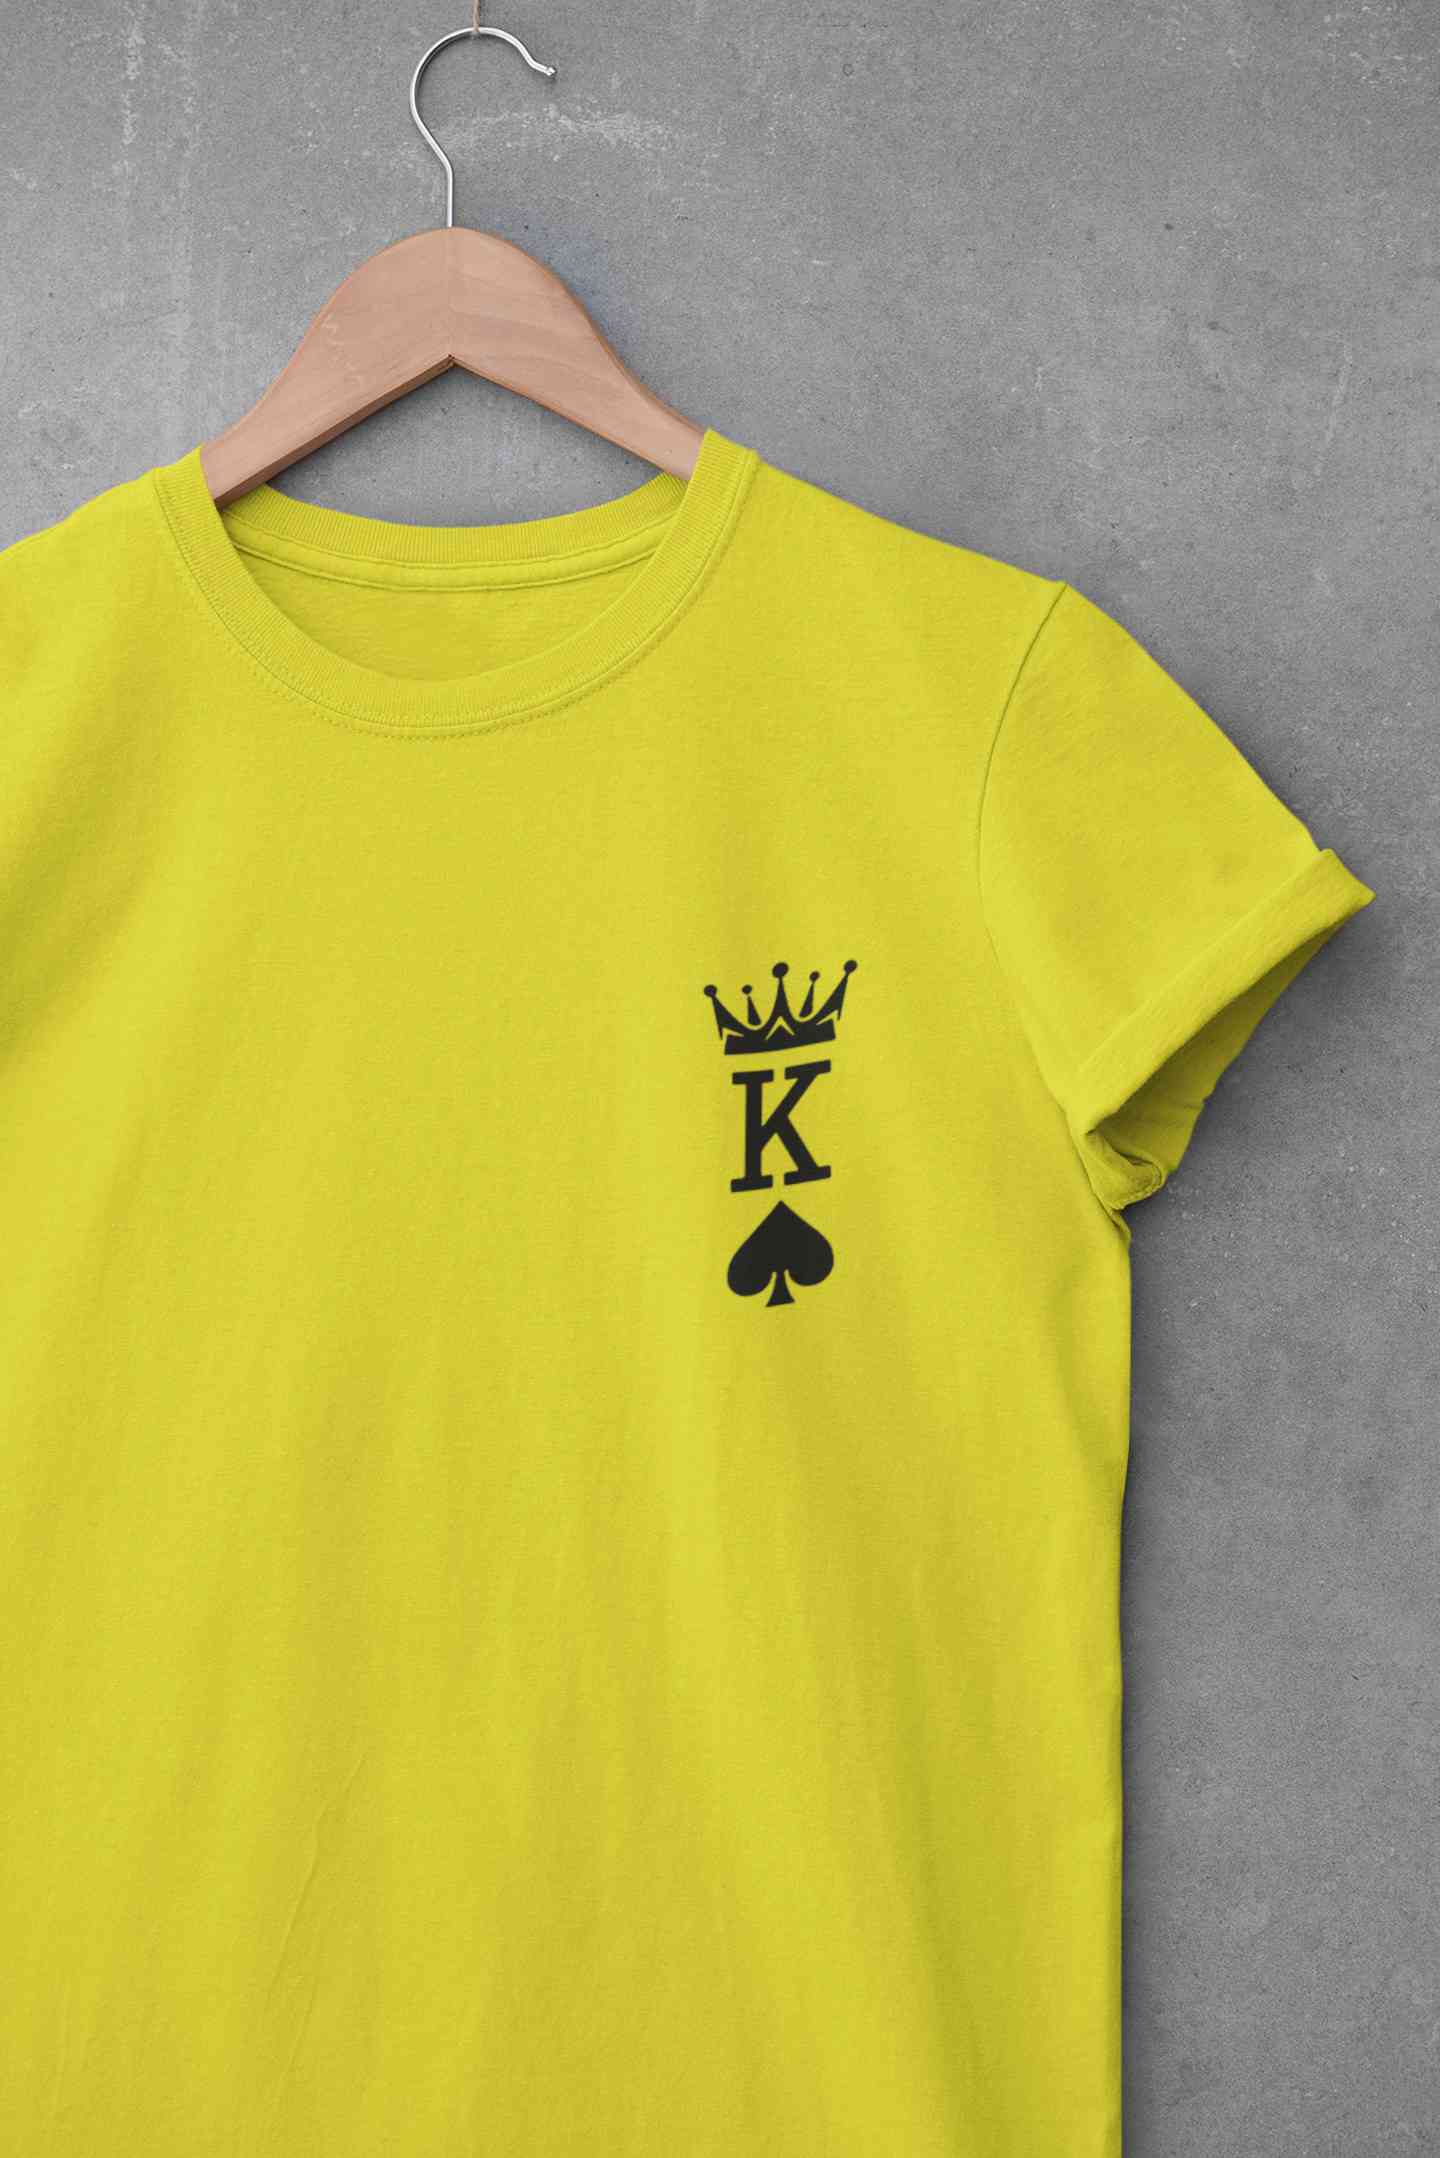 Herren Krone King Of Spades Poker Side Pocket Mens Half Sleeves T-shirt- FunkyTeesClub